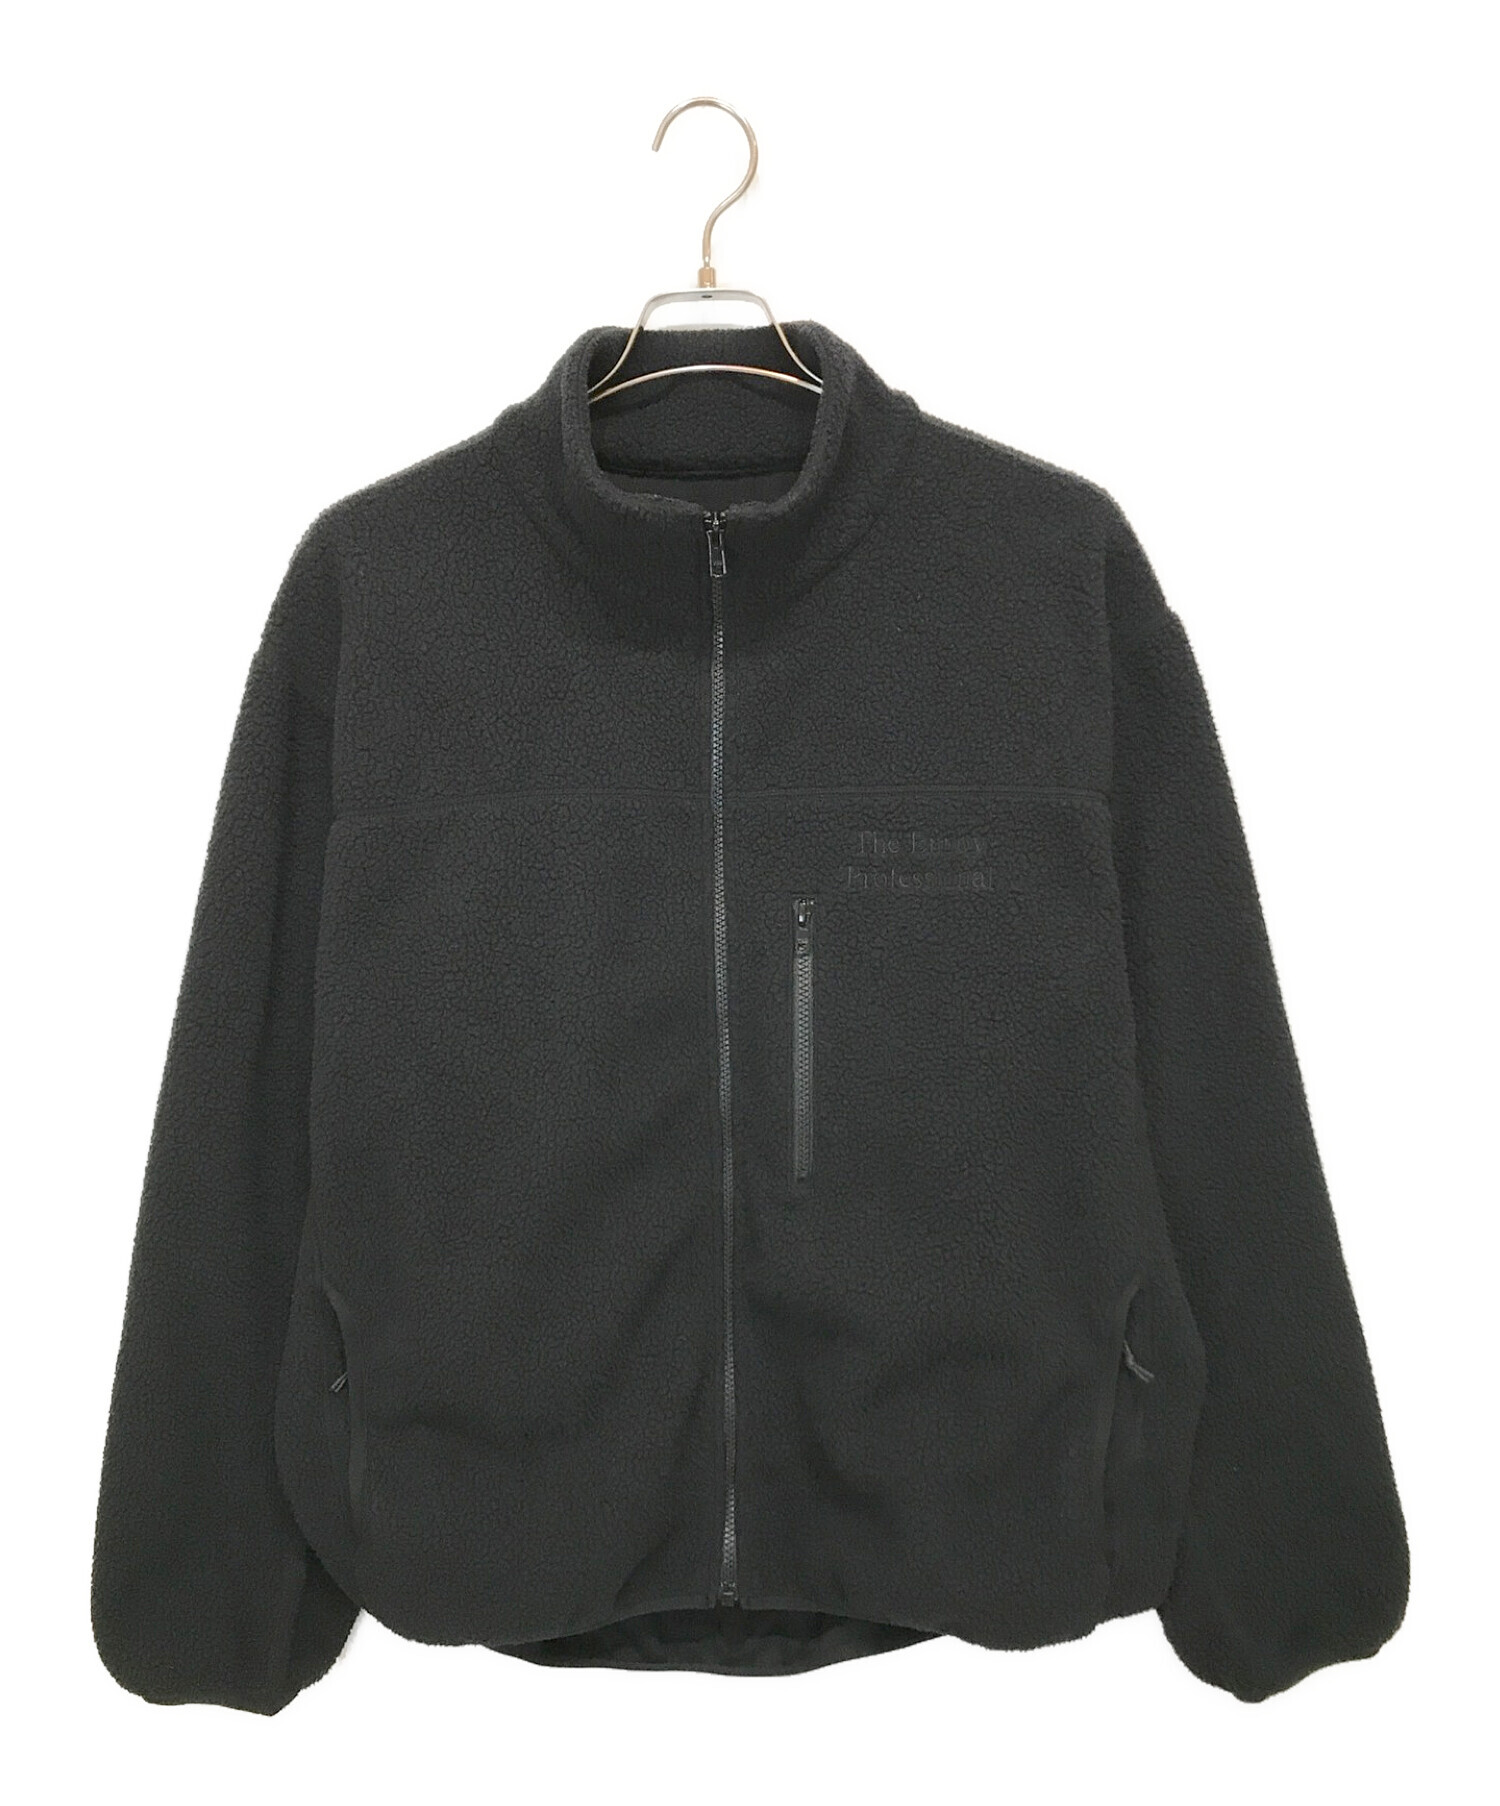 ENNOY (エンノイ) フリースジャケット ブラック サイズ:L